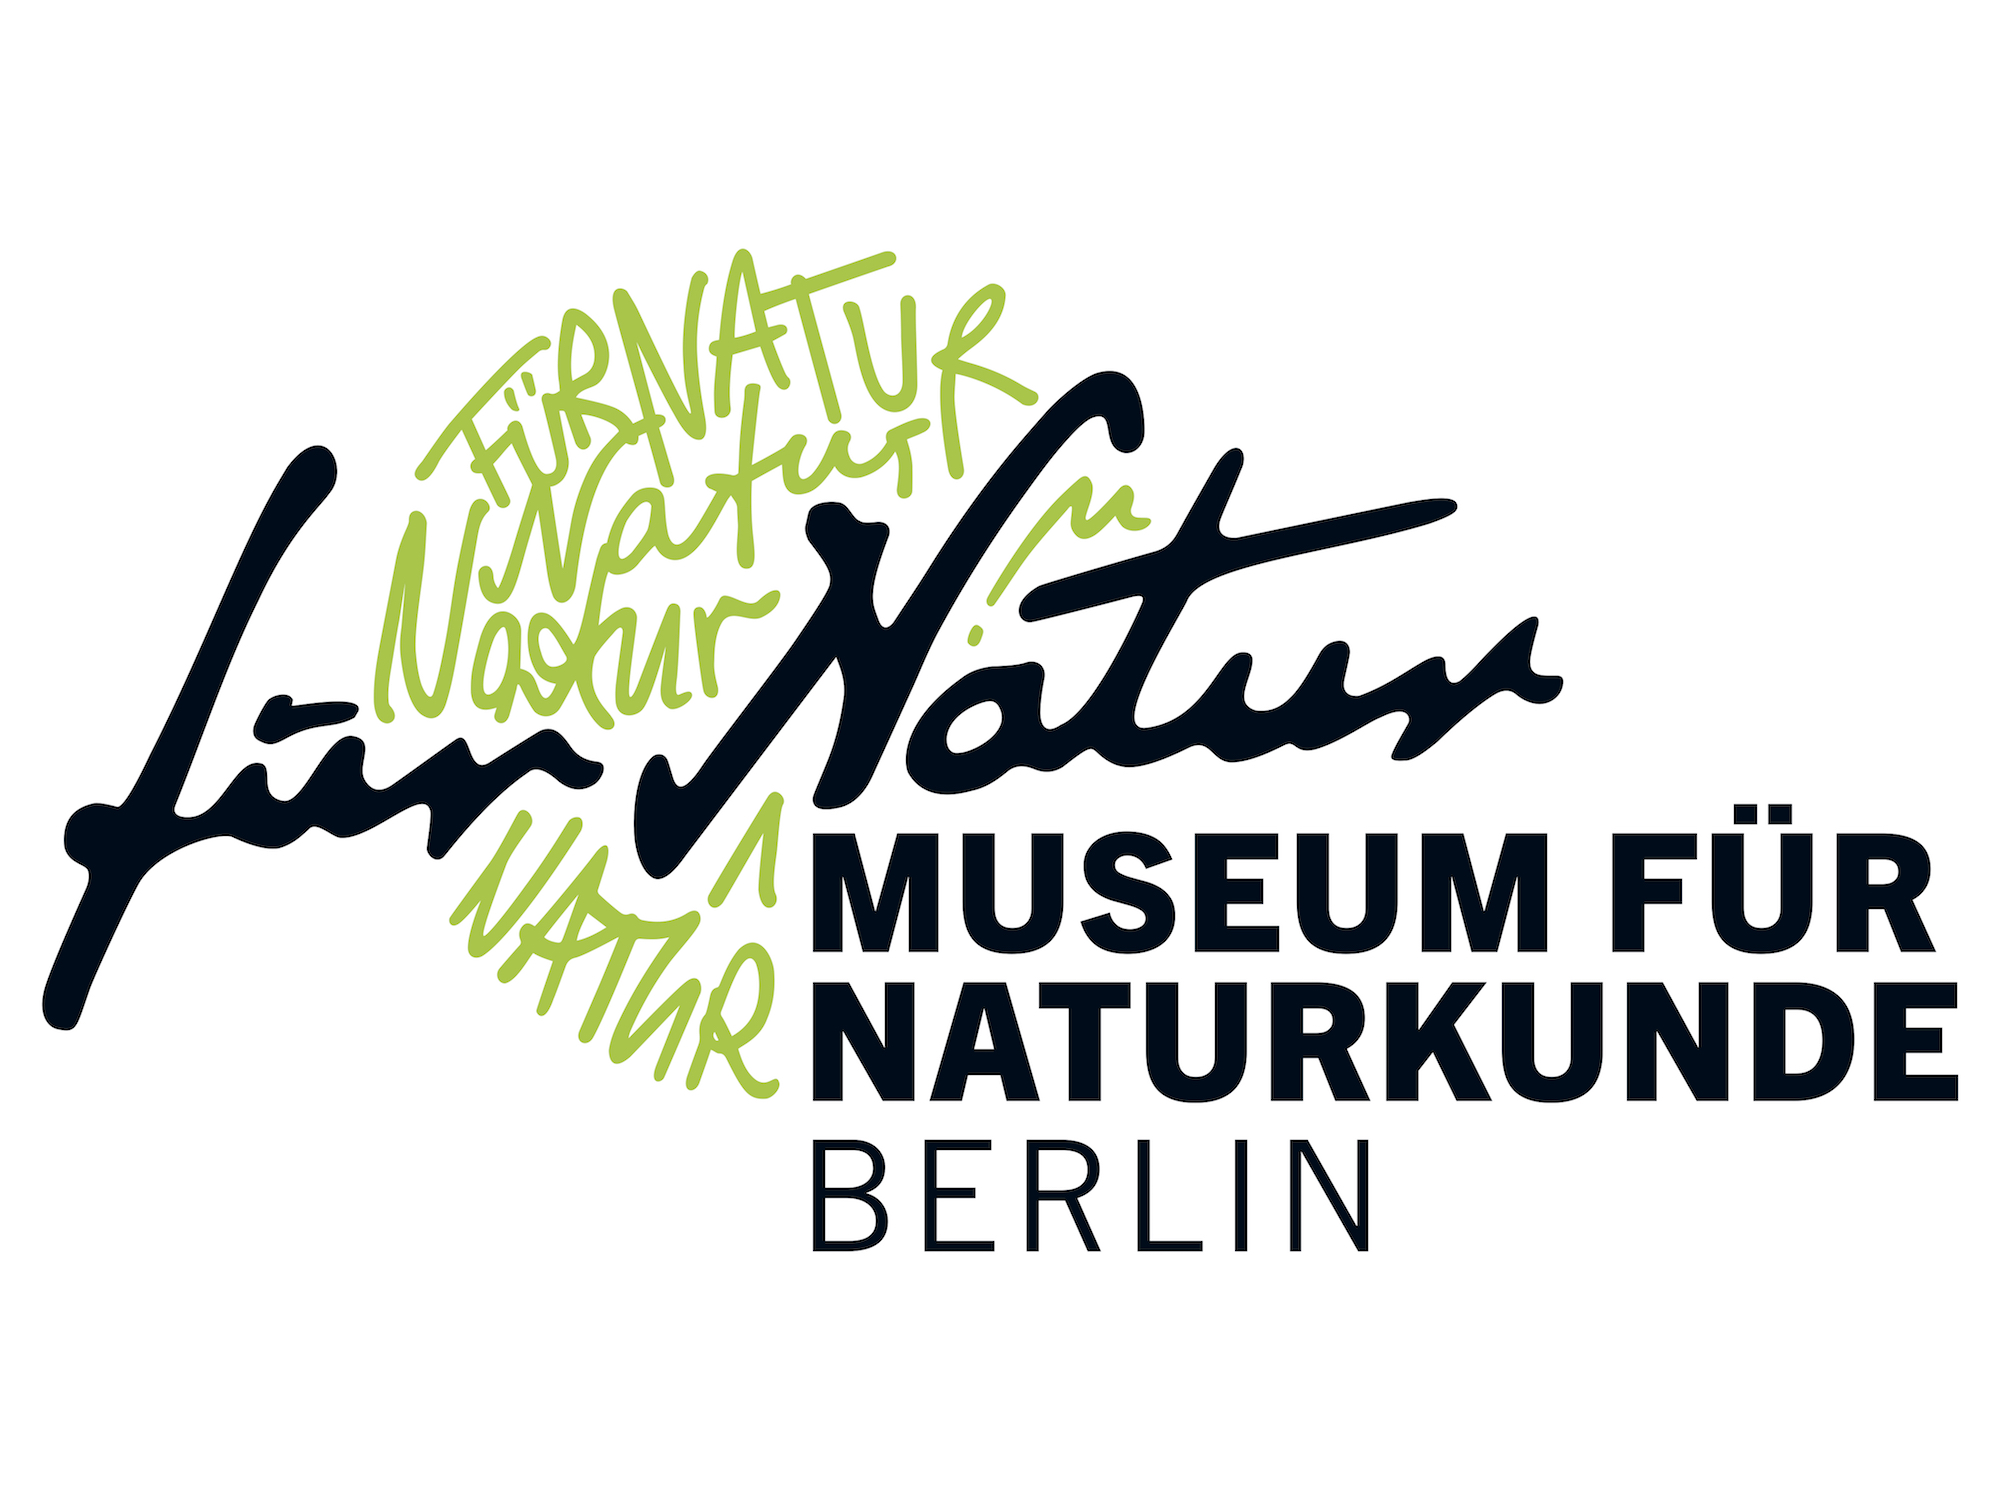 Logo: Museum für Naturkunde - Leibniz-Institut für Evolutions- und Biodiversitätsforschung